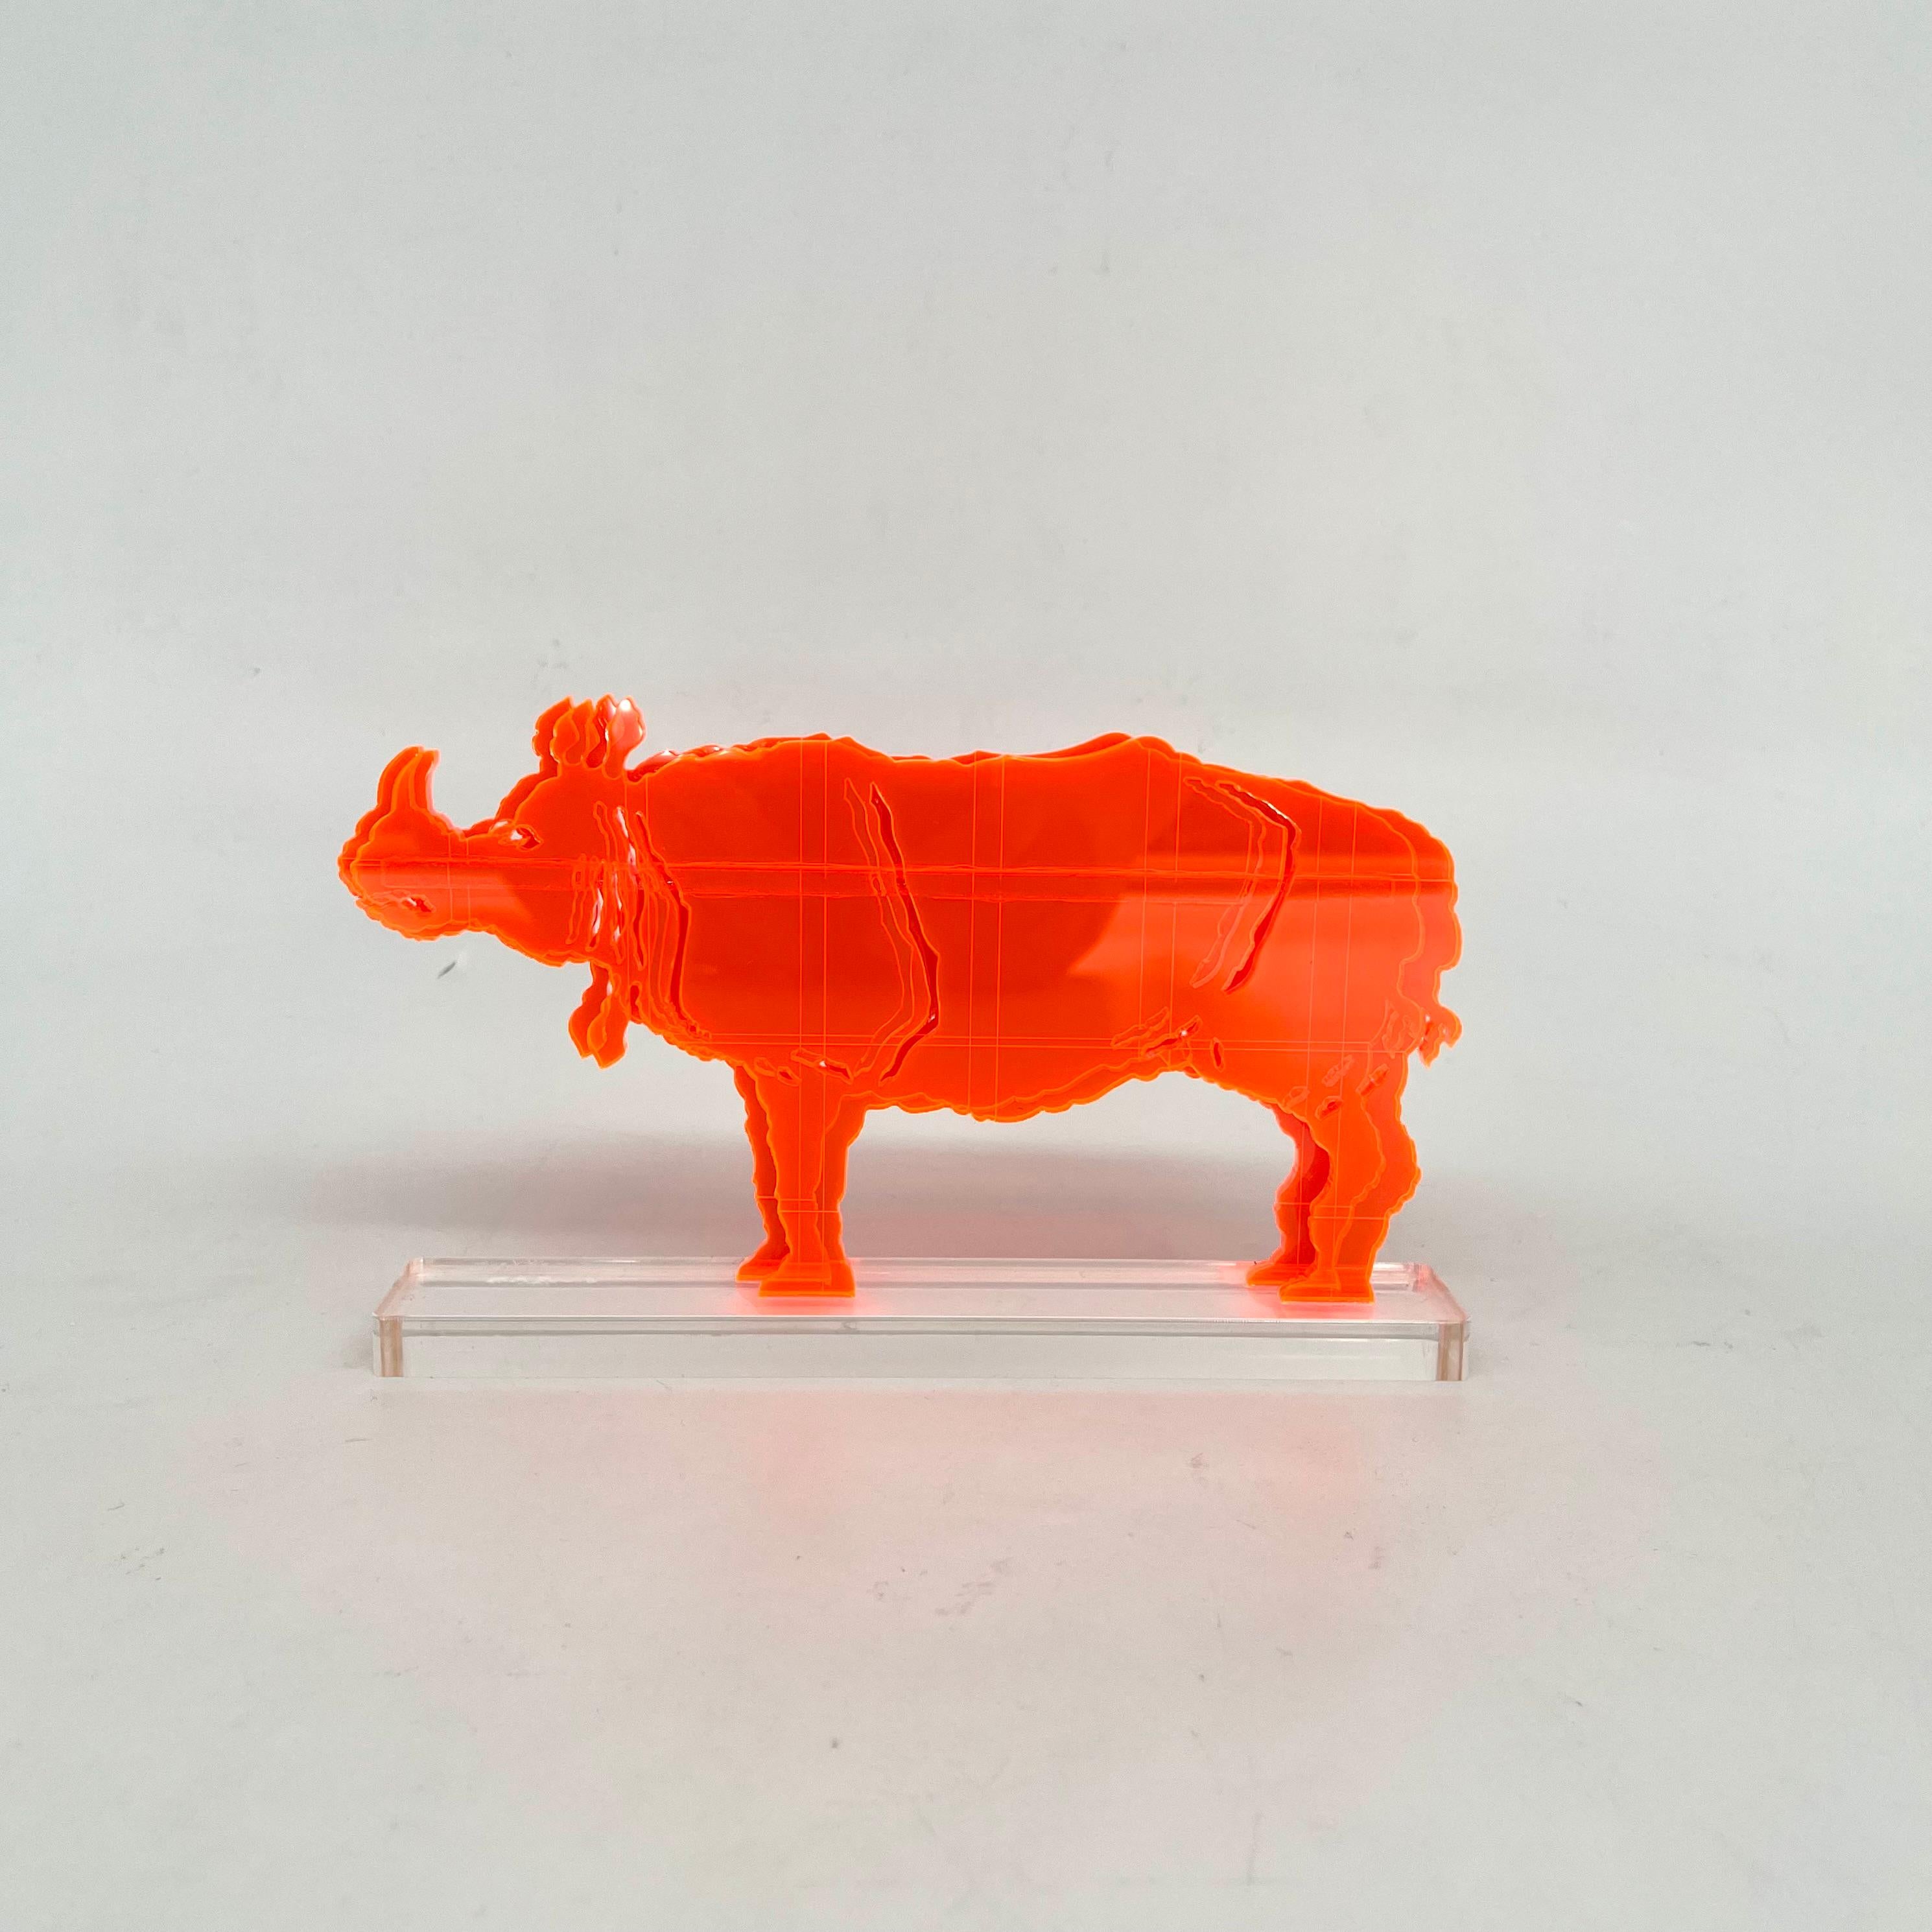 Gino MAROTTA (1935-2012)
Rinoceronte artificiale, 2010
Edition Artbeat arrêtée
Sculpture, multiple en méthacrylate coloré orange et découpé. Signé sur la base. Dans sa boite d’origine. 
Haut. : 11 cm Long. : 18,5 cm

Gino MAROTTA